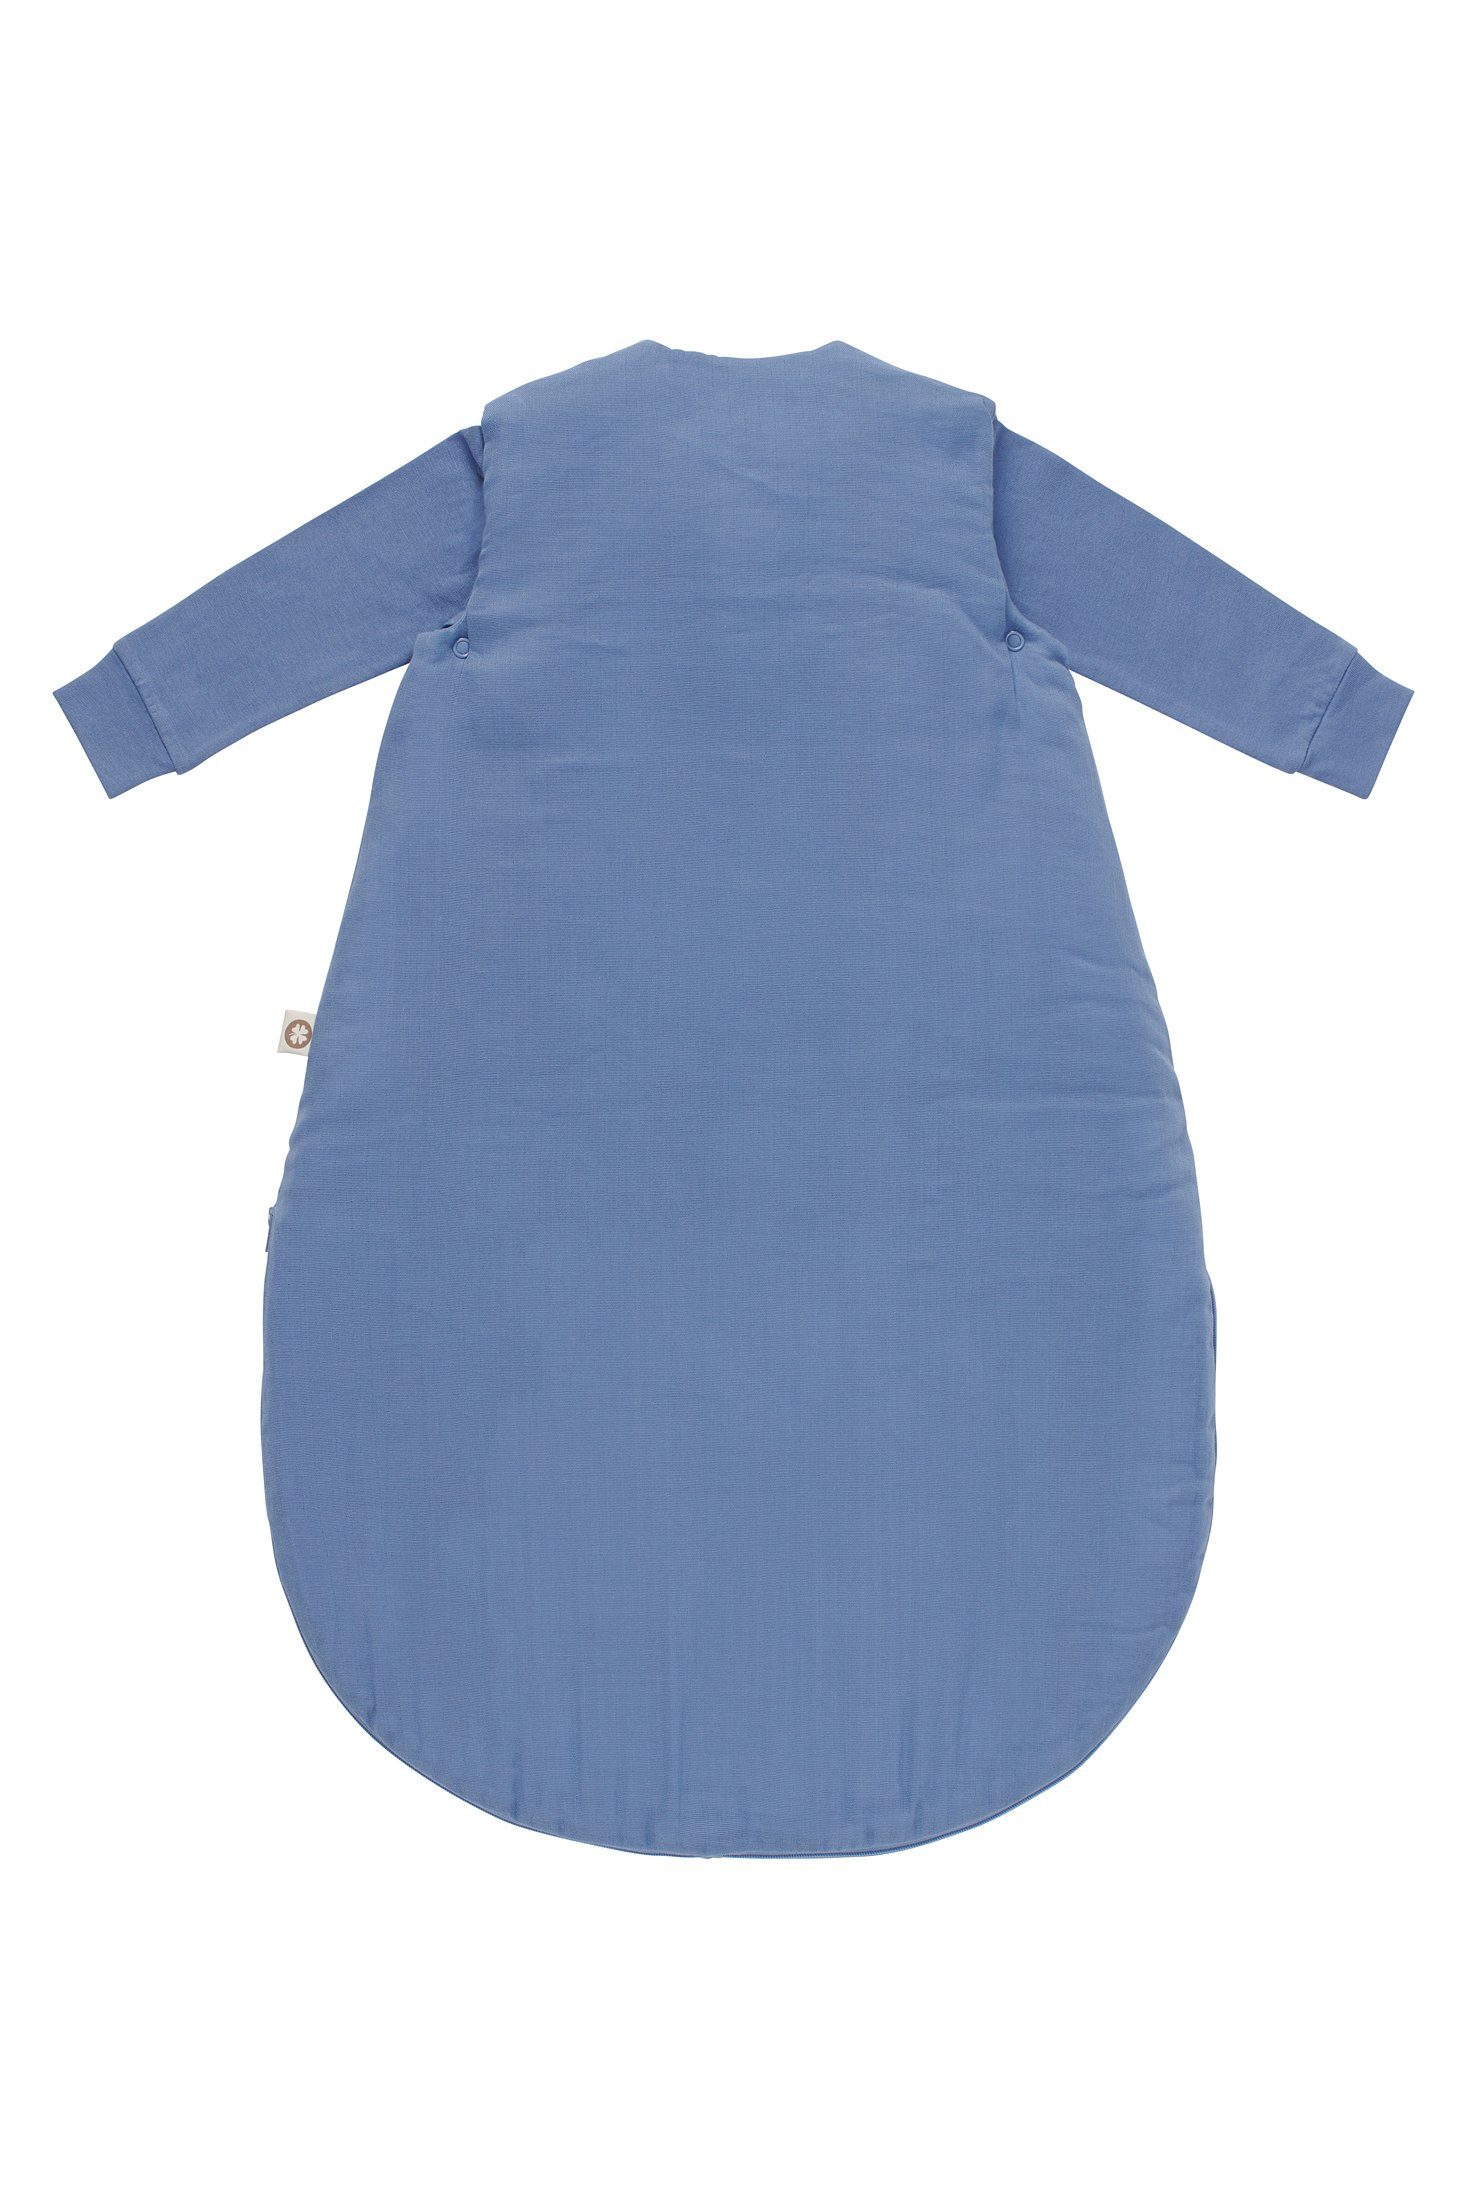 Baby (1 Colony tlg) 4-Jahreszeiten Uni Schlafsack Babyschlafsack Noppies Noppies Blue